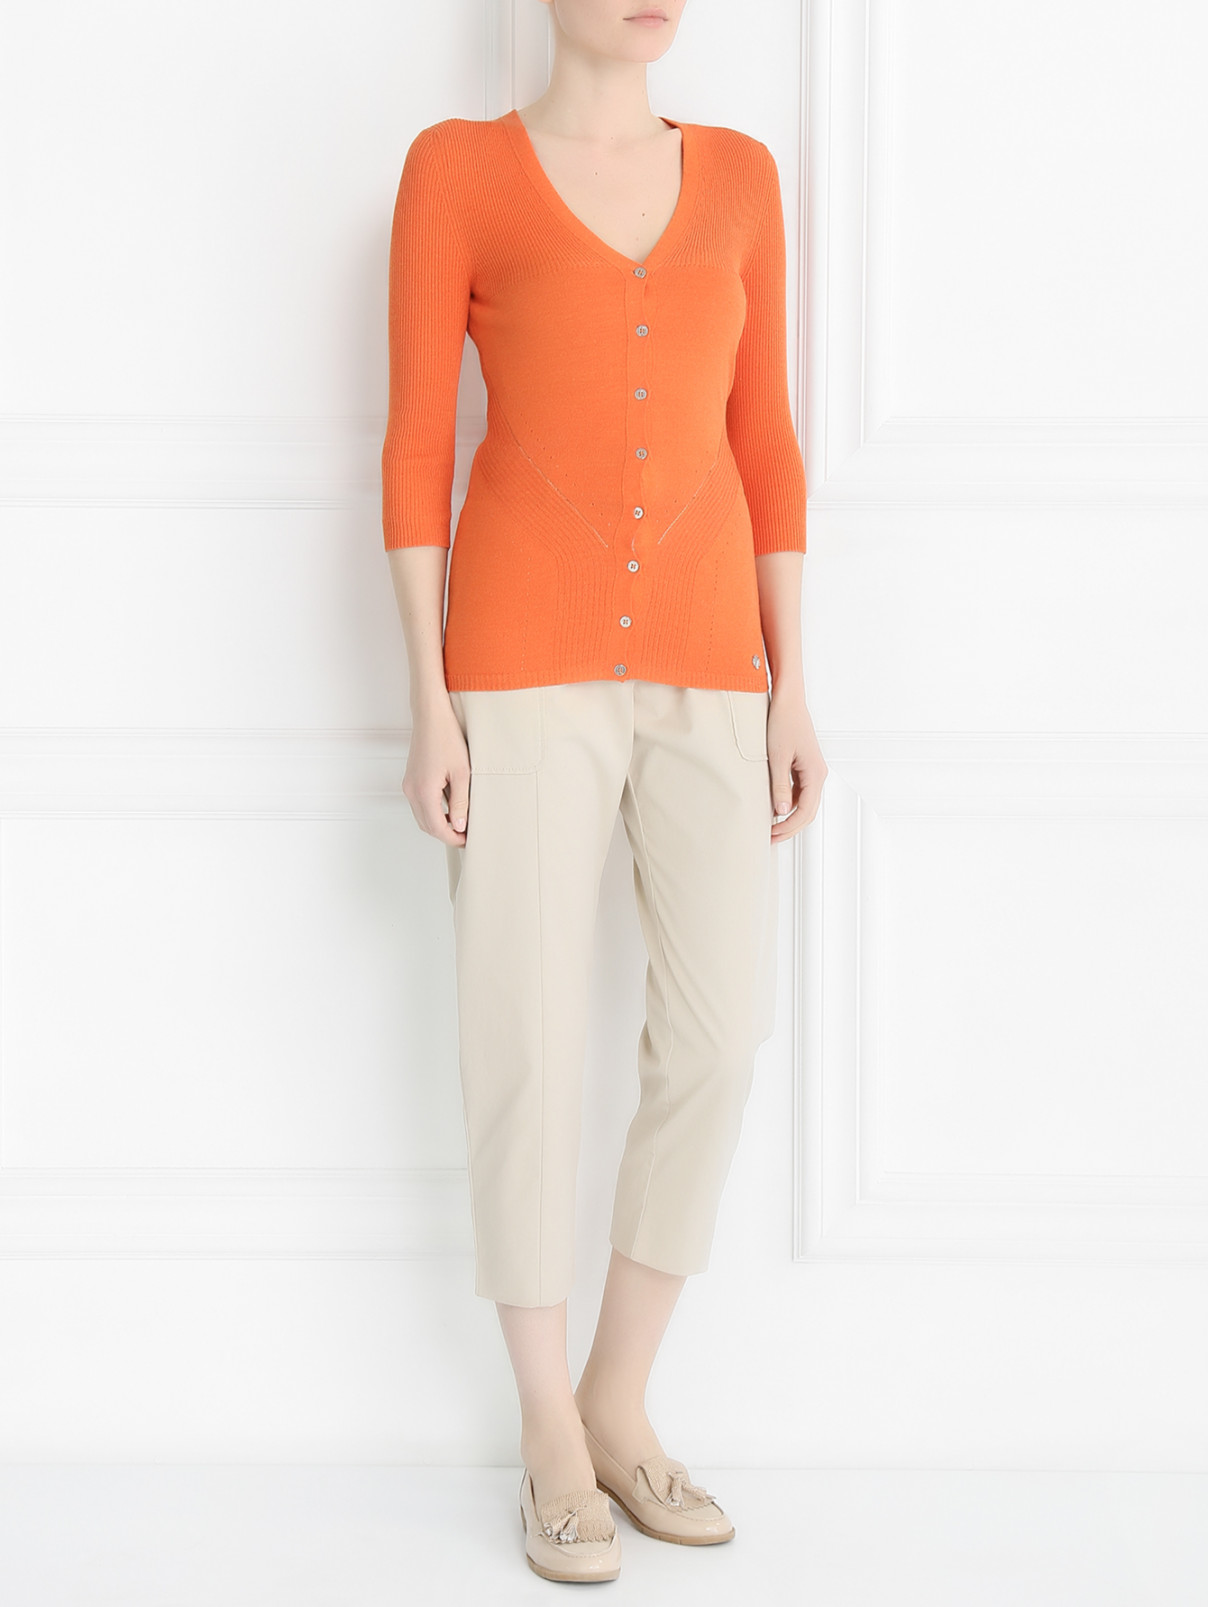 Кардиган с v-образным вырезом и короткими рукавами Versace Collection  –  Модель Общий вид  – Цвет:  Оранжевый